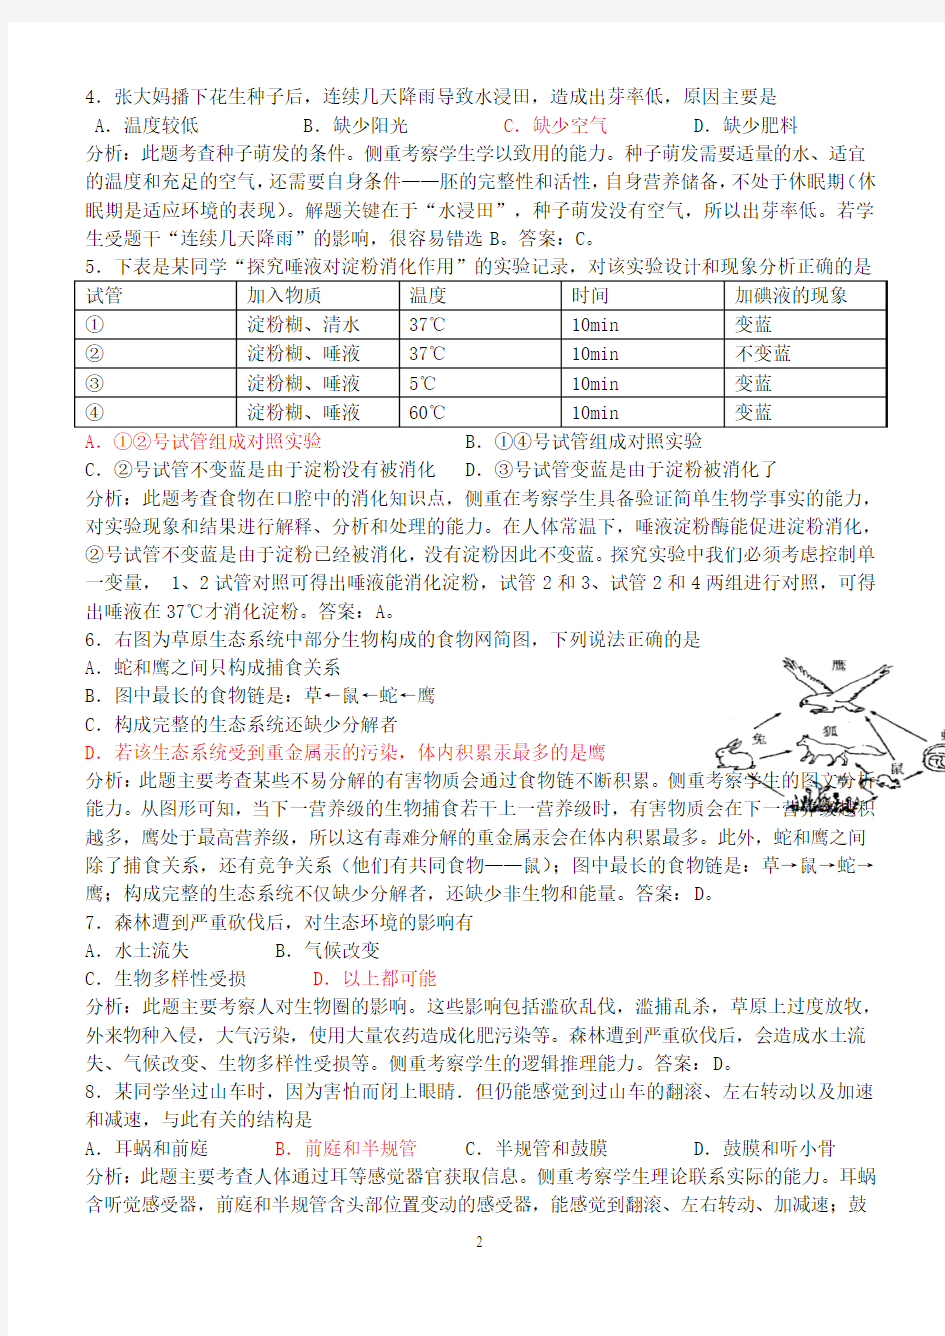 2011年广东省初中二年级(八年级)学业考试生物试题分析